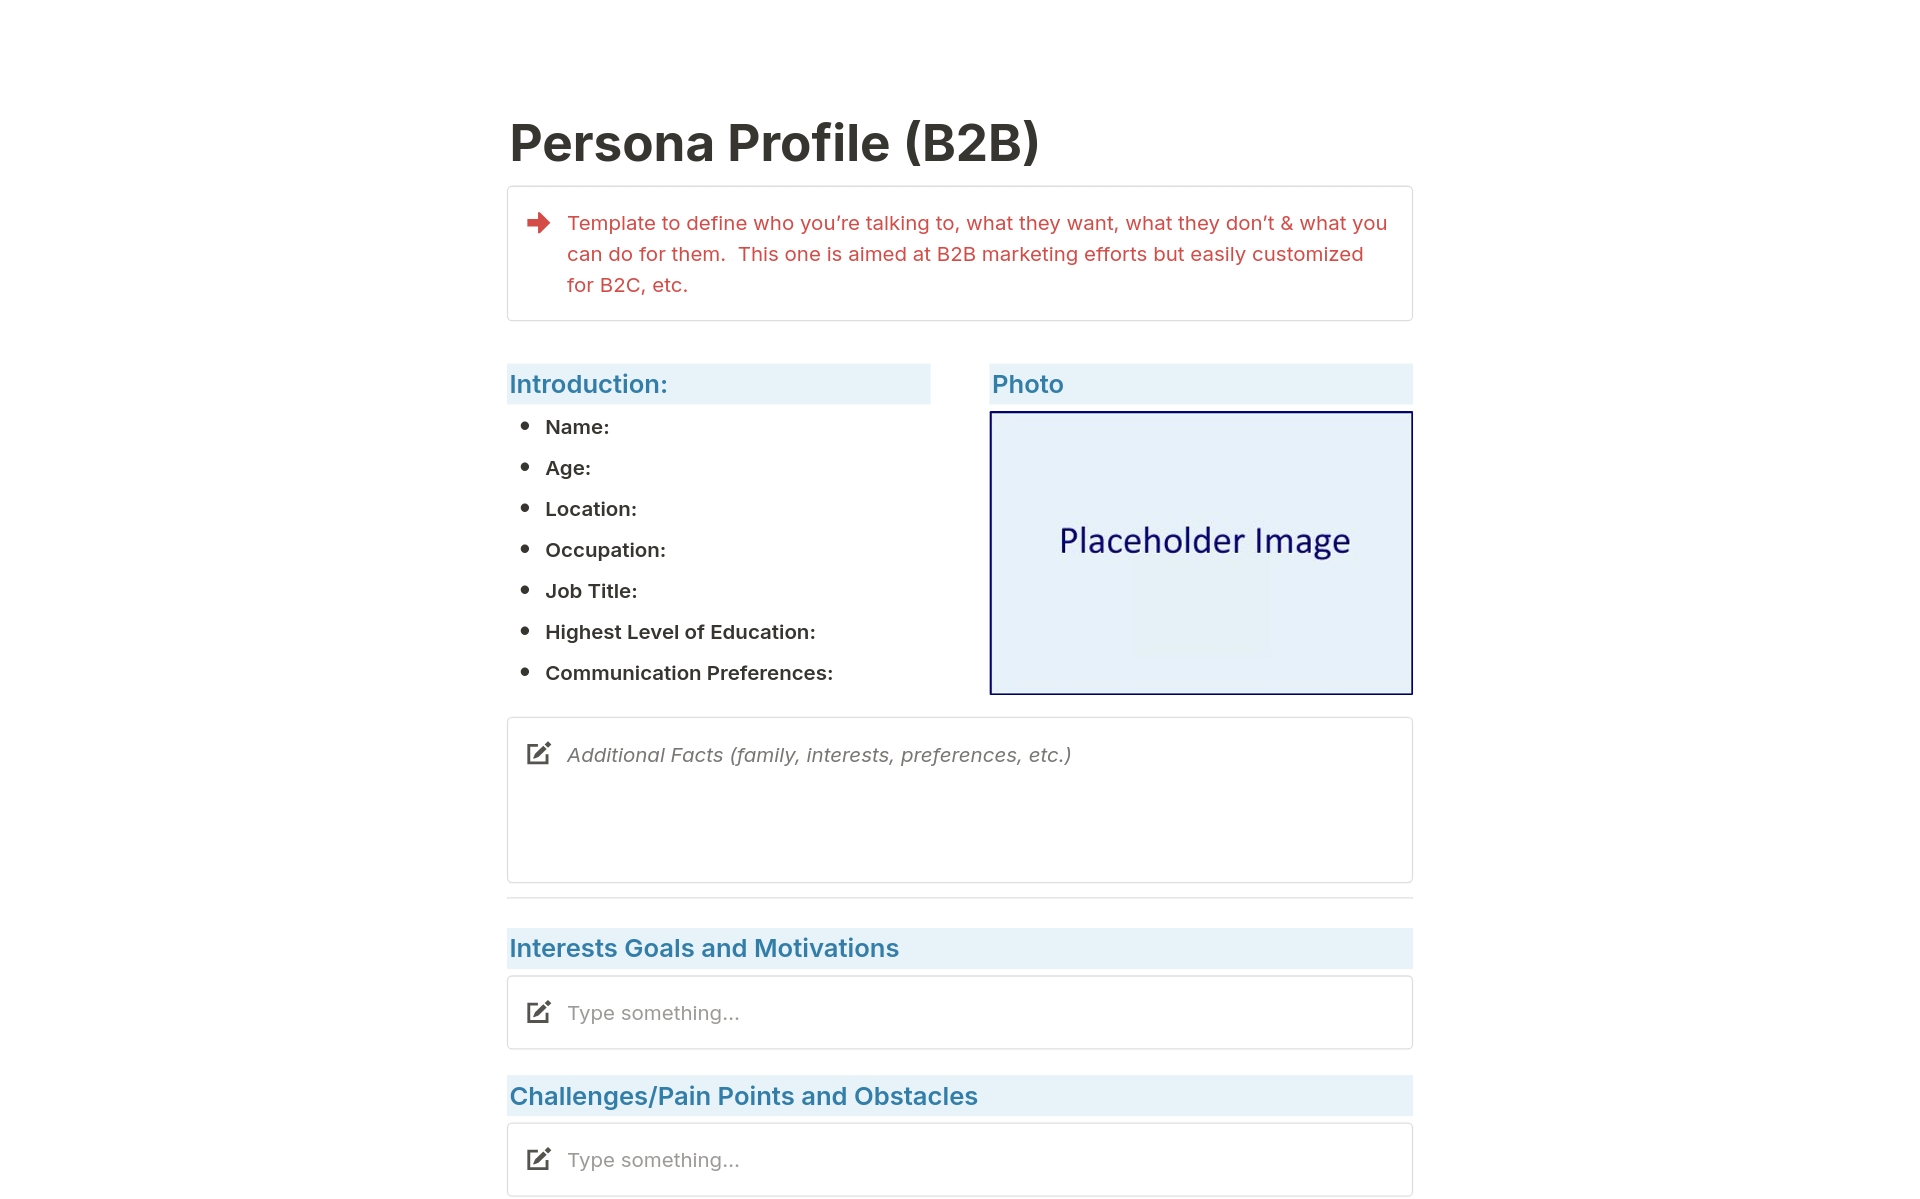 Uma prévia do modelo para Persona Profile (B2B)